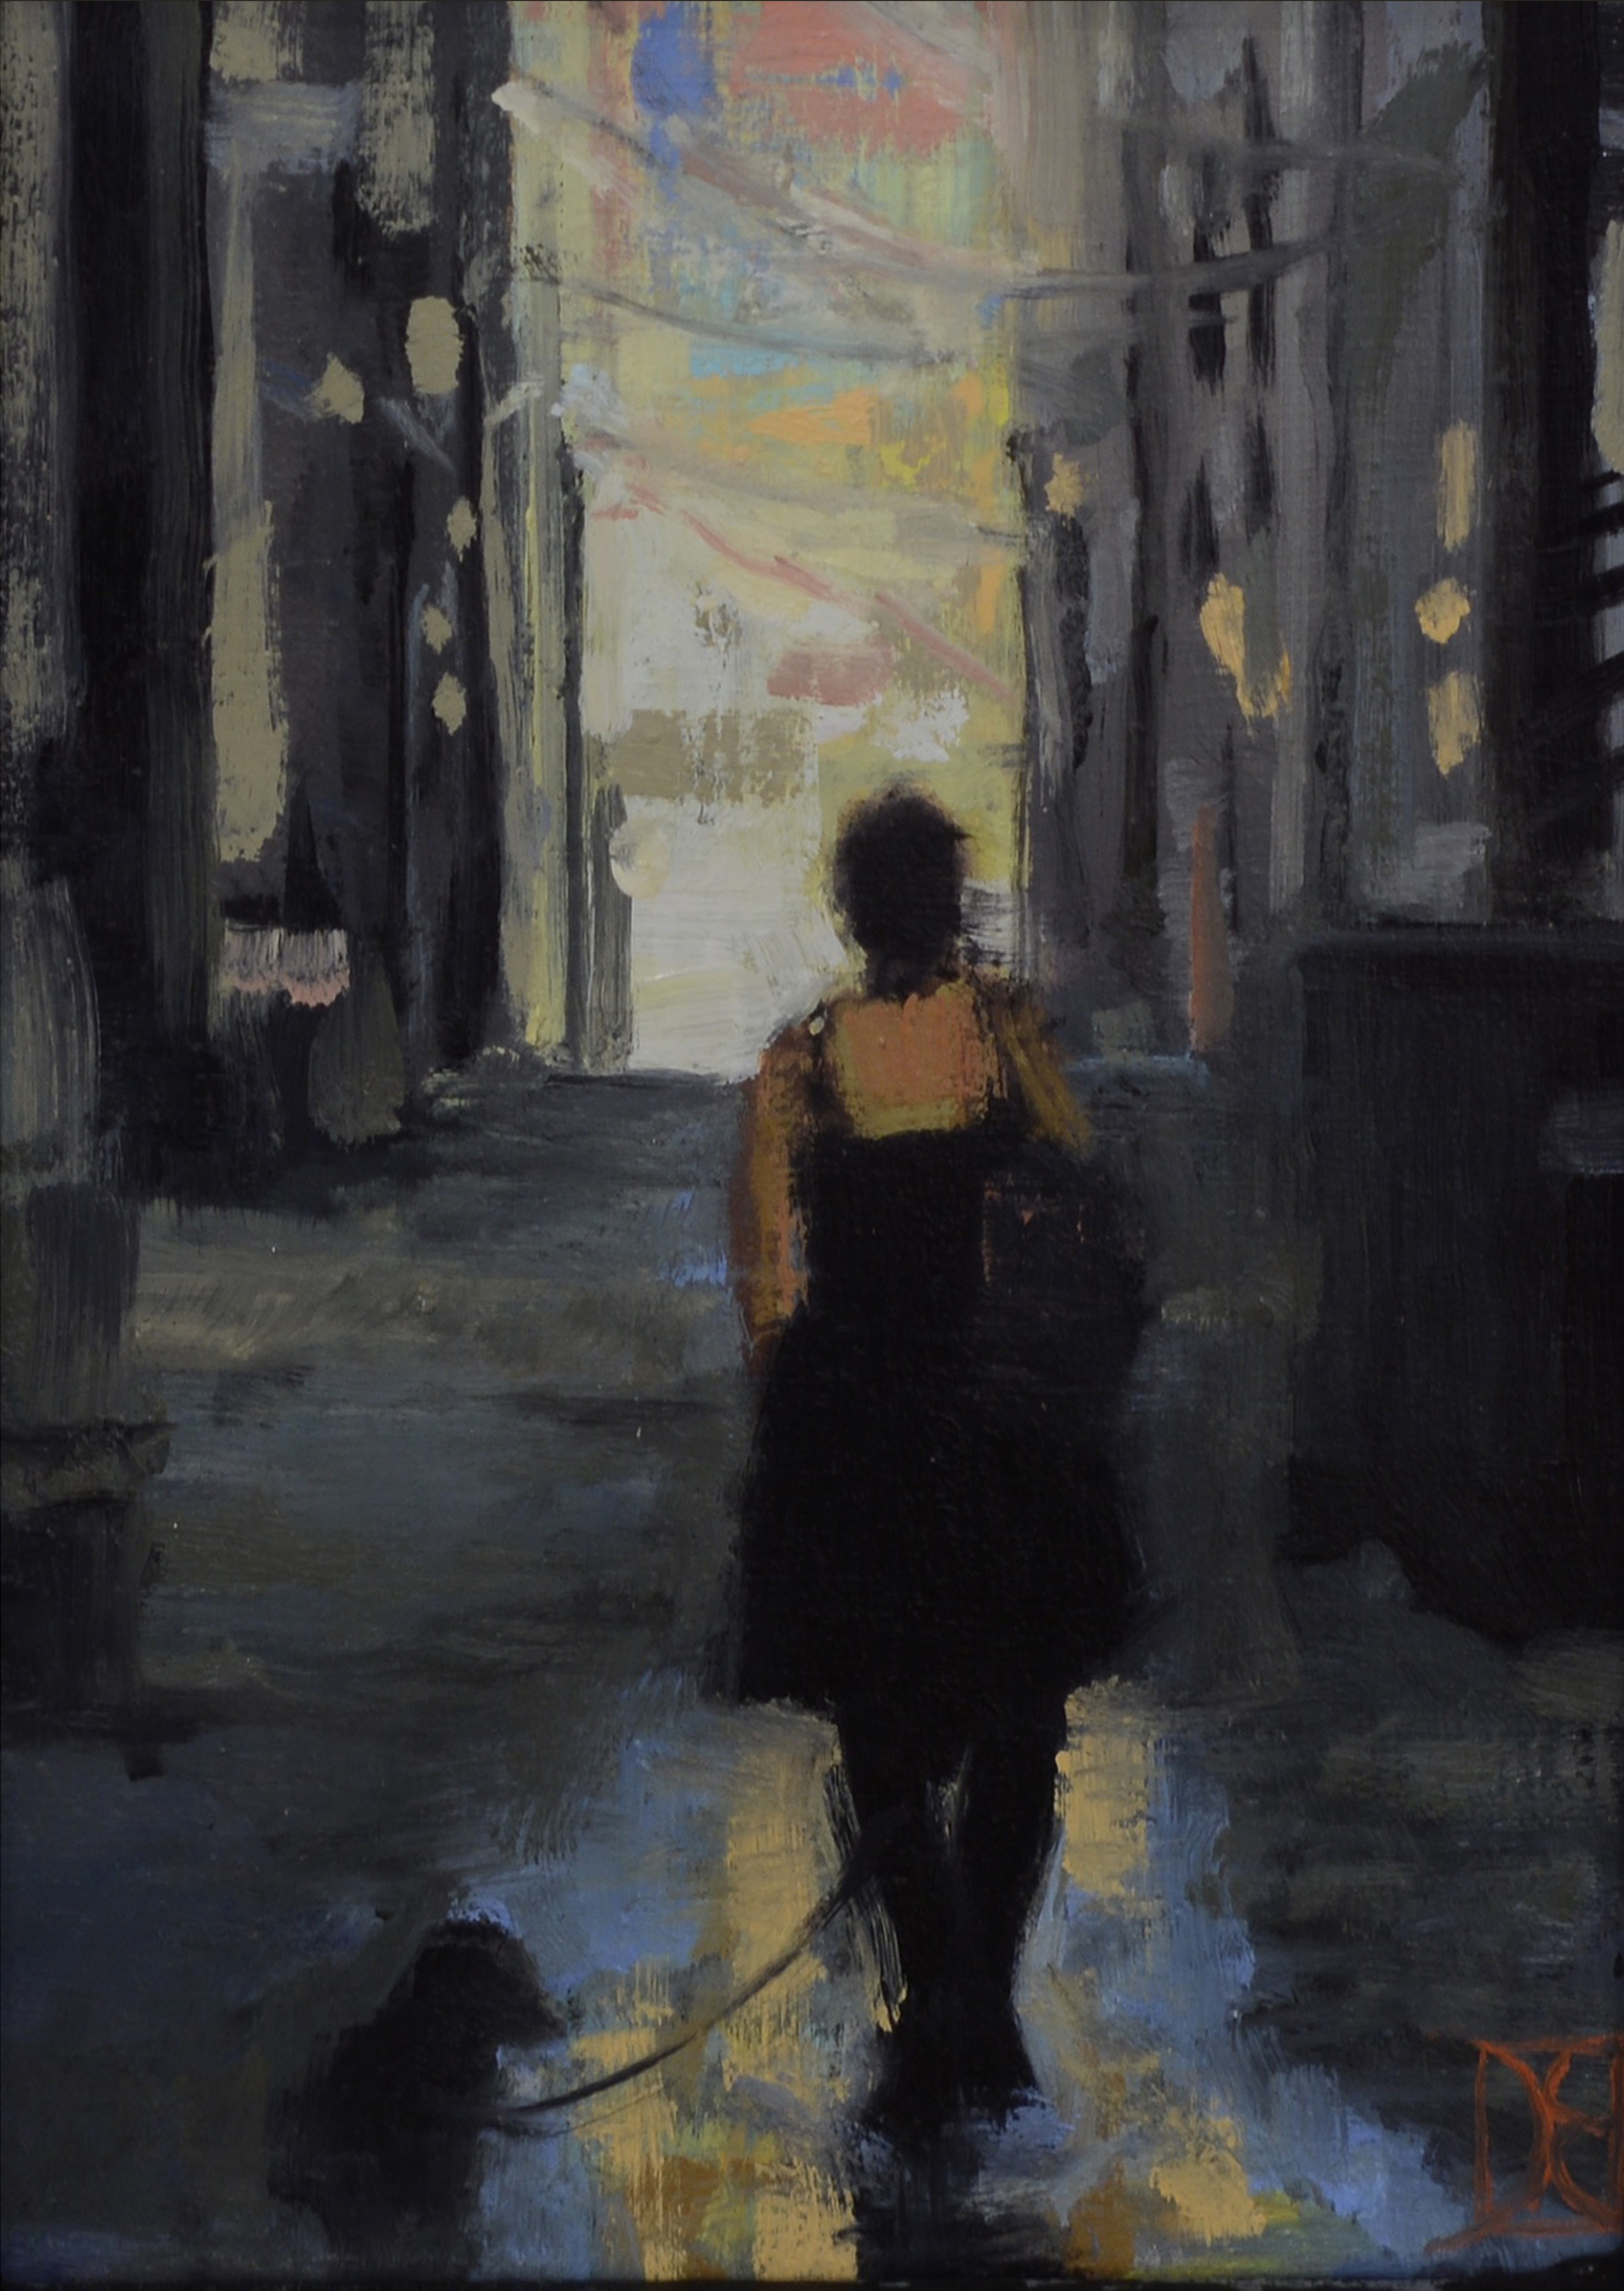 Jen in Alley by Destiny Bowman